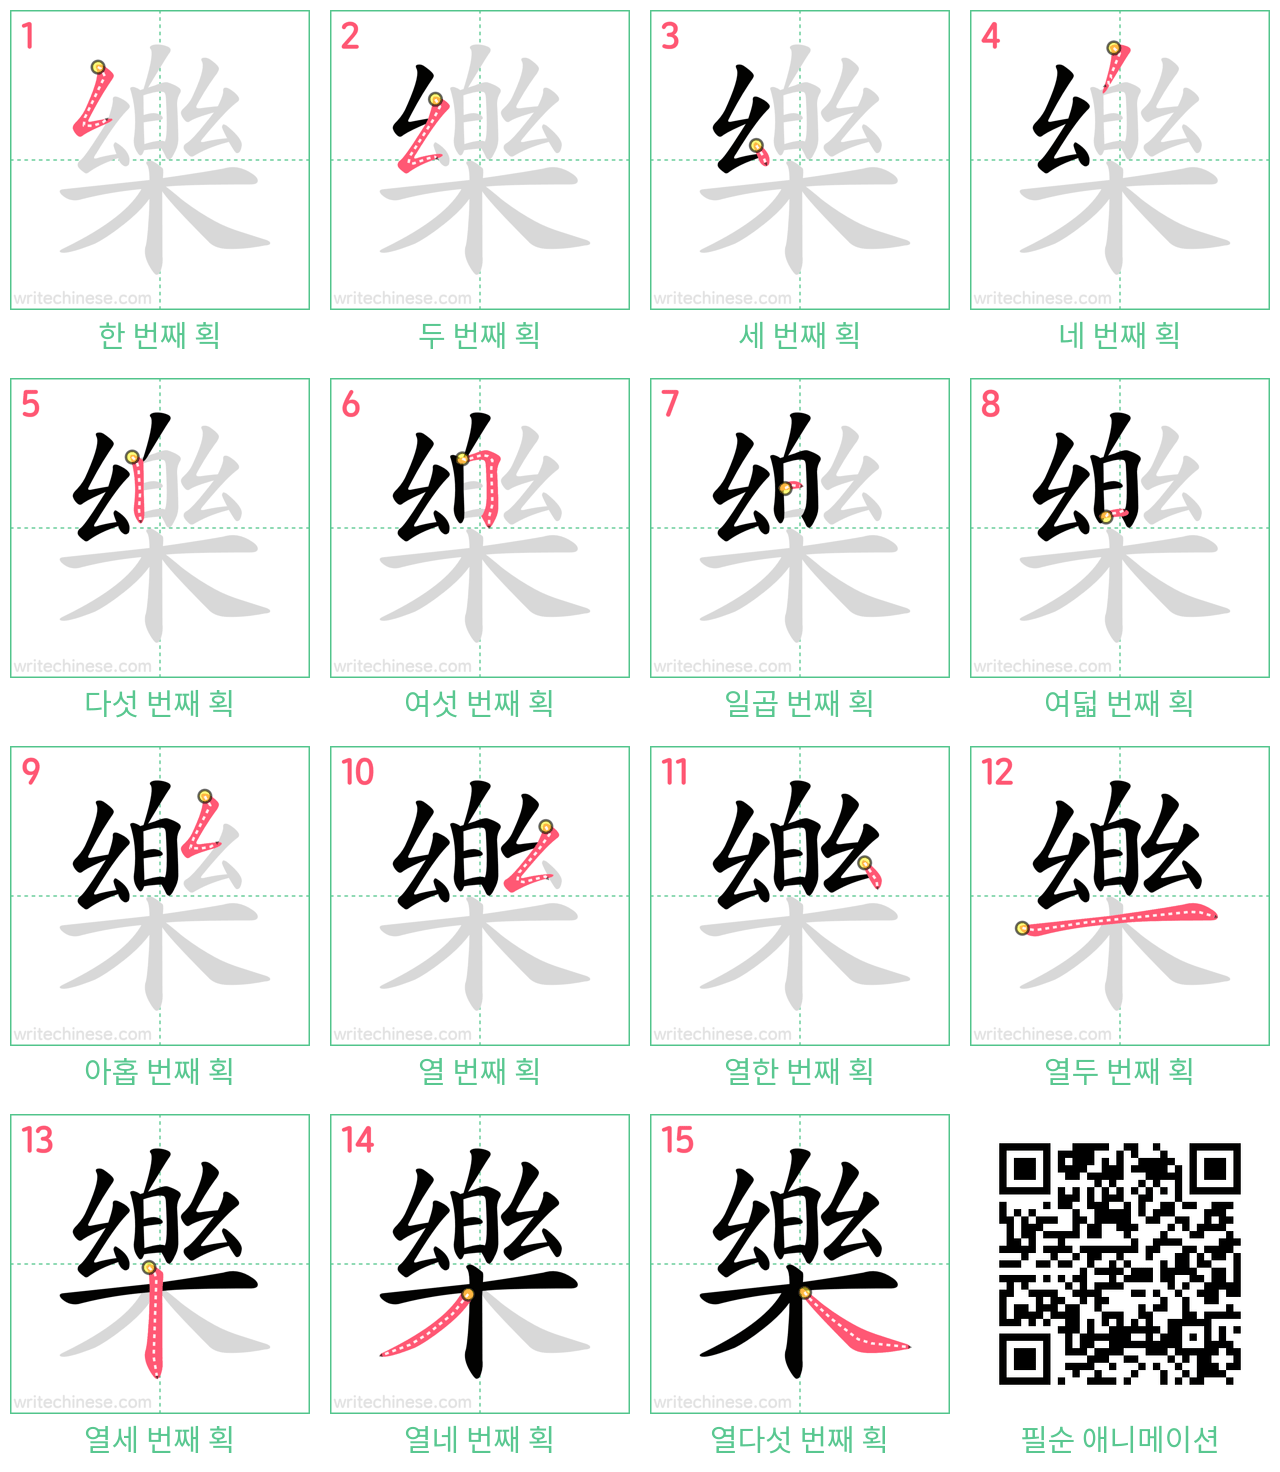 樂 step-by-step stroke order diagrams